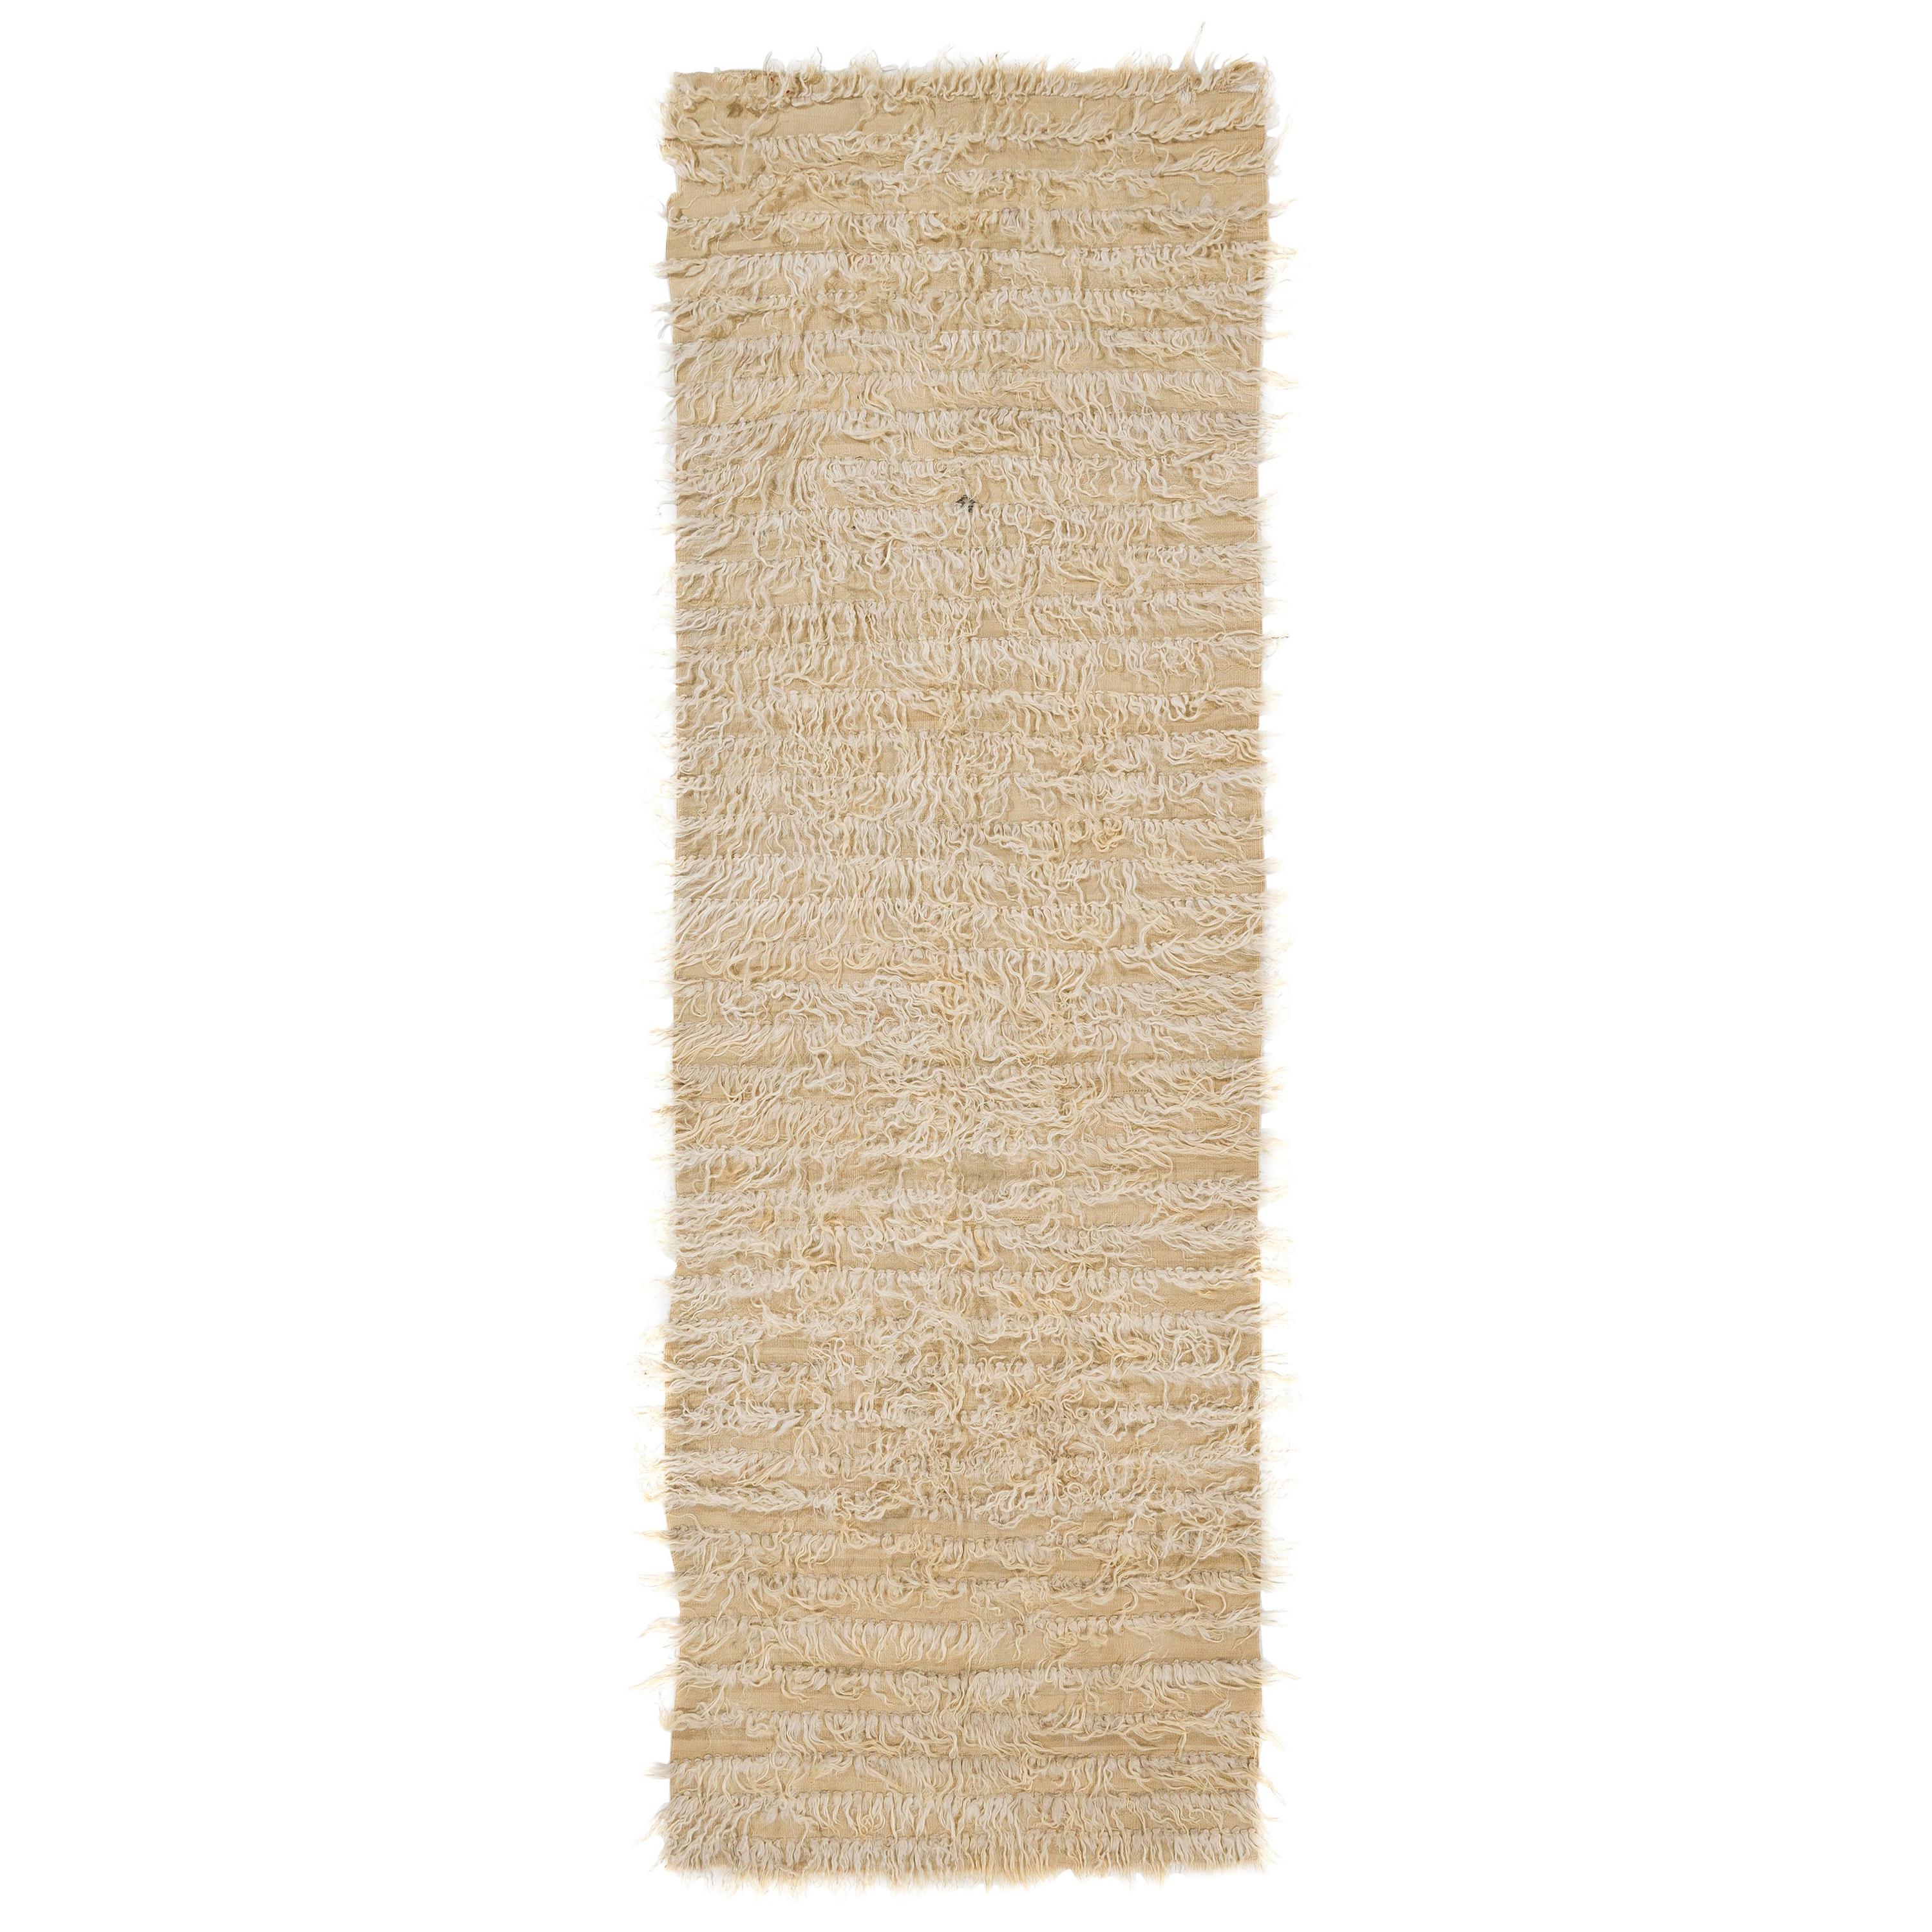 3.7x10.9 Ft Vintage Plain Creme Tulu Teppich. 100% natürliche ungefärbte Mohair Wolle Läufer